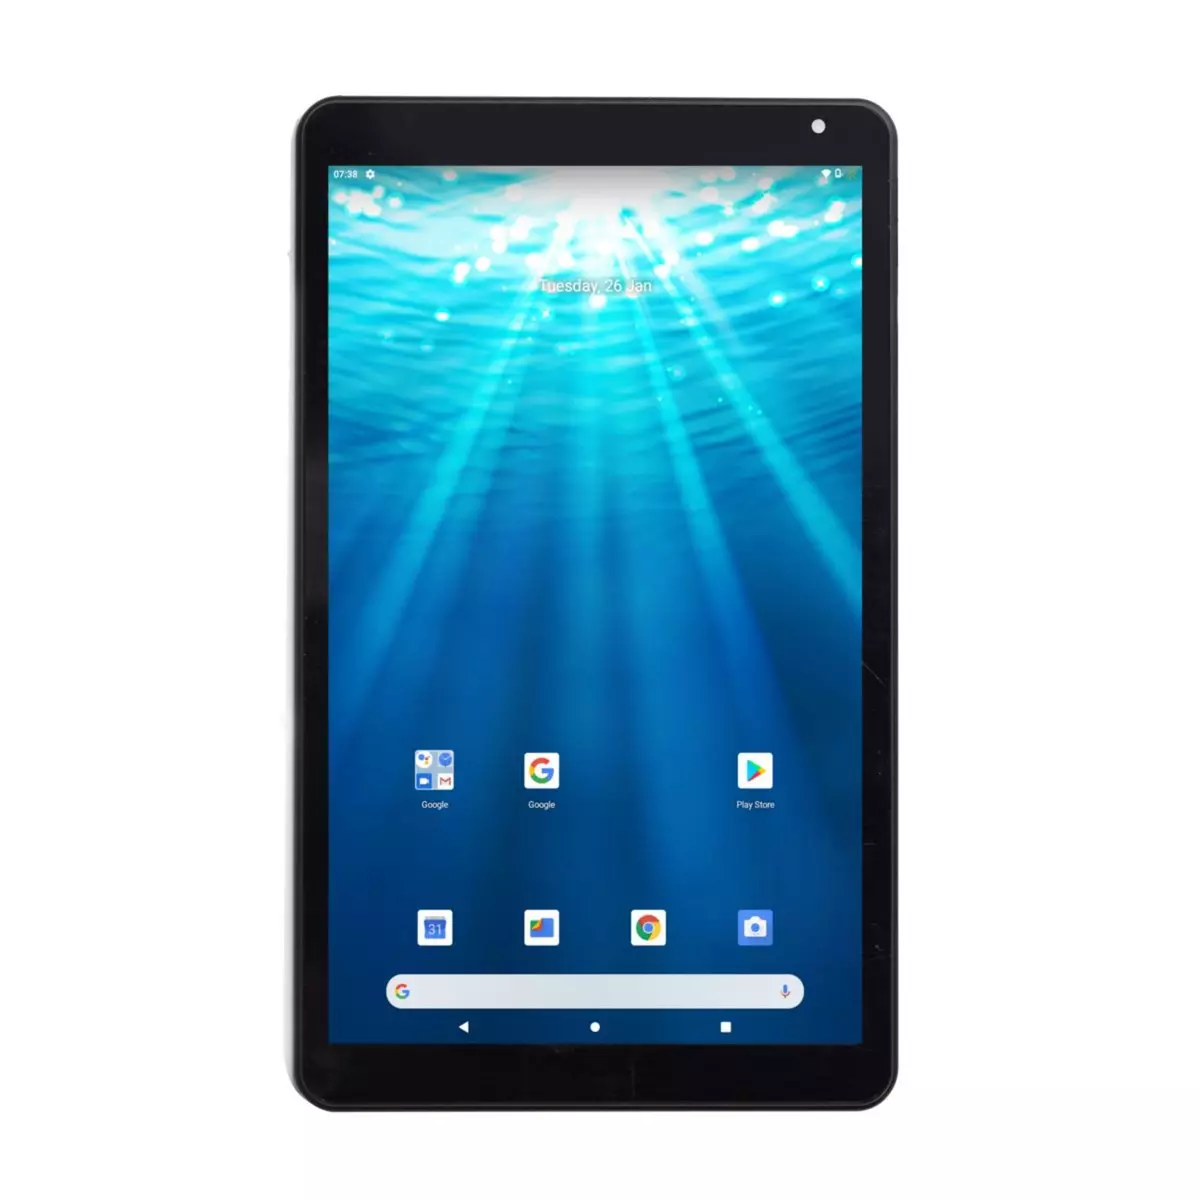 Tablette Tactile 8 Go IT Works TM904 9.7 Quad core à 1.2 GHz Android 4.1.1